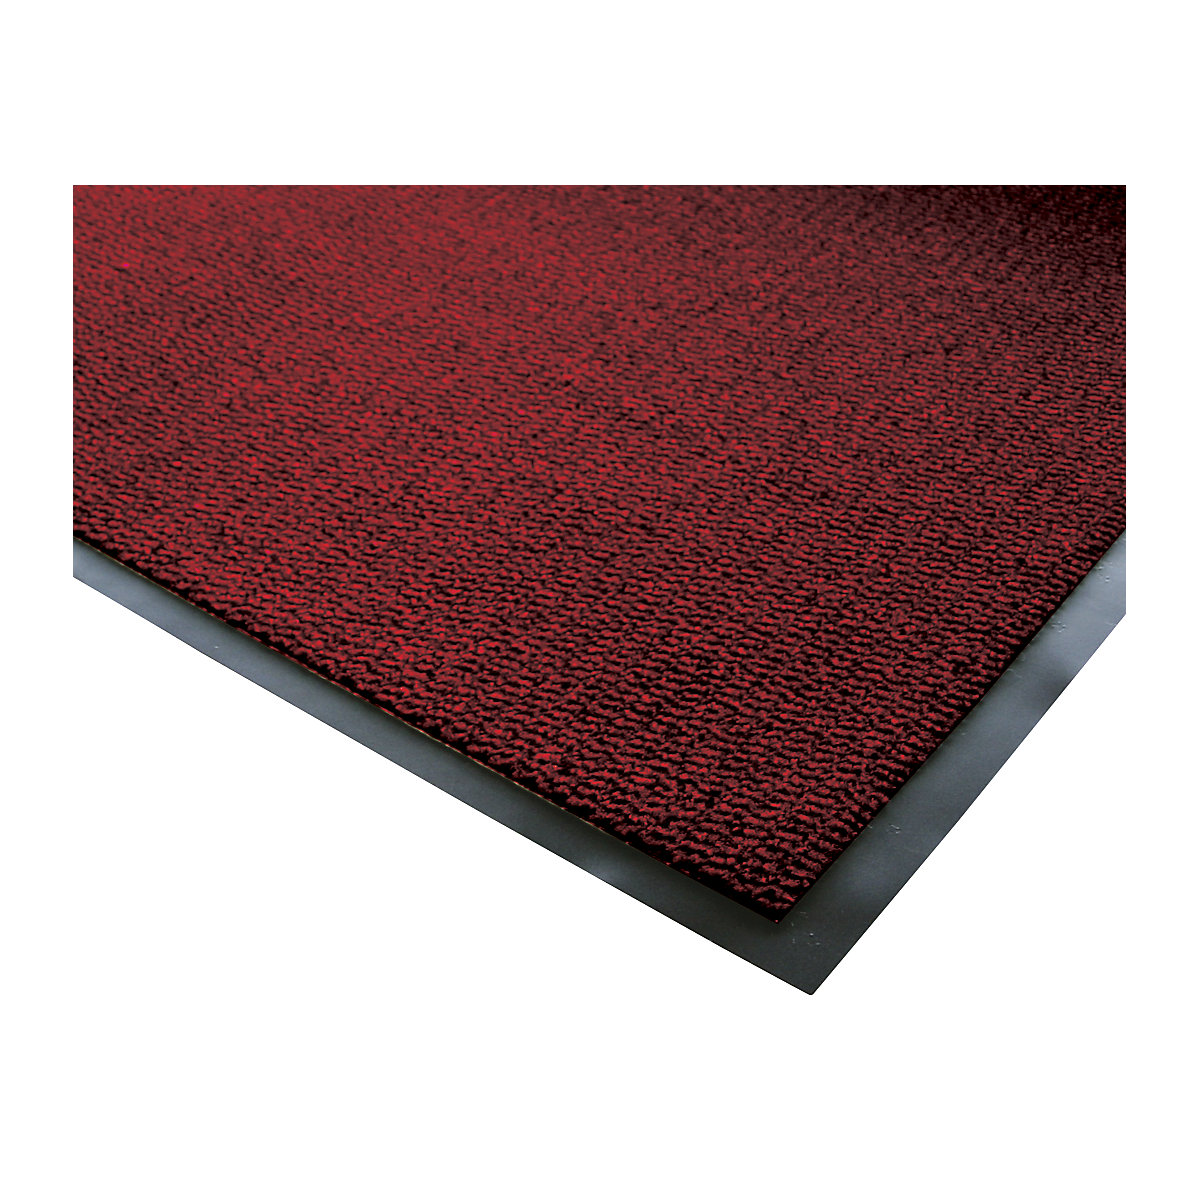 Esteira de retenção de sujidade para interior, pêlo em polipropileno, CxL 1200 x 900 mm, preto / vermelho